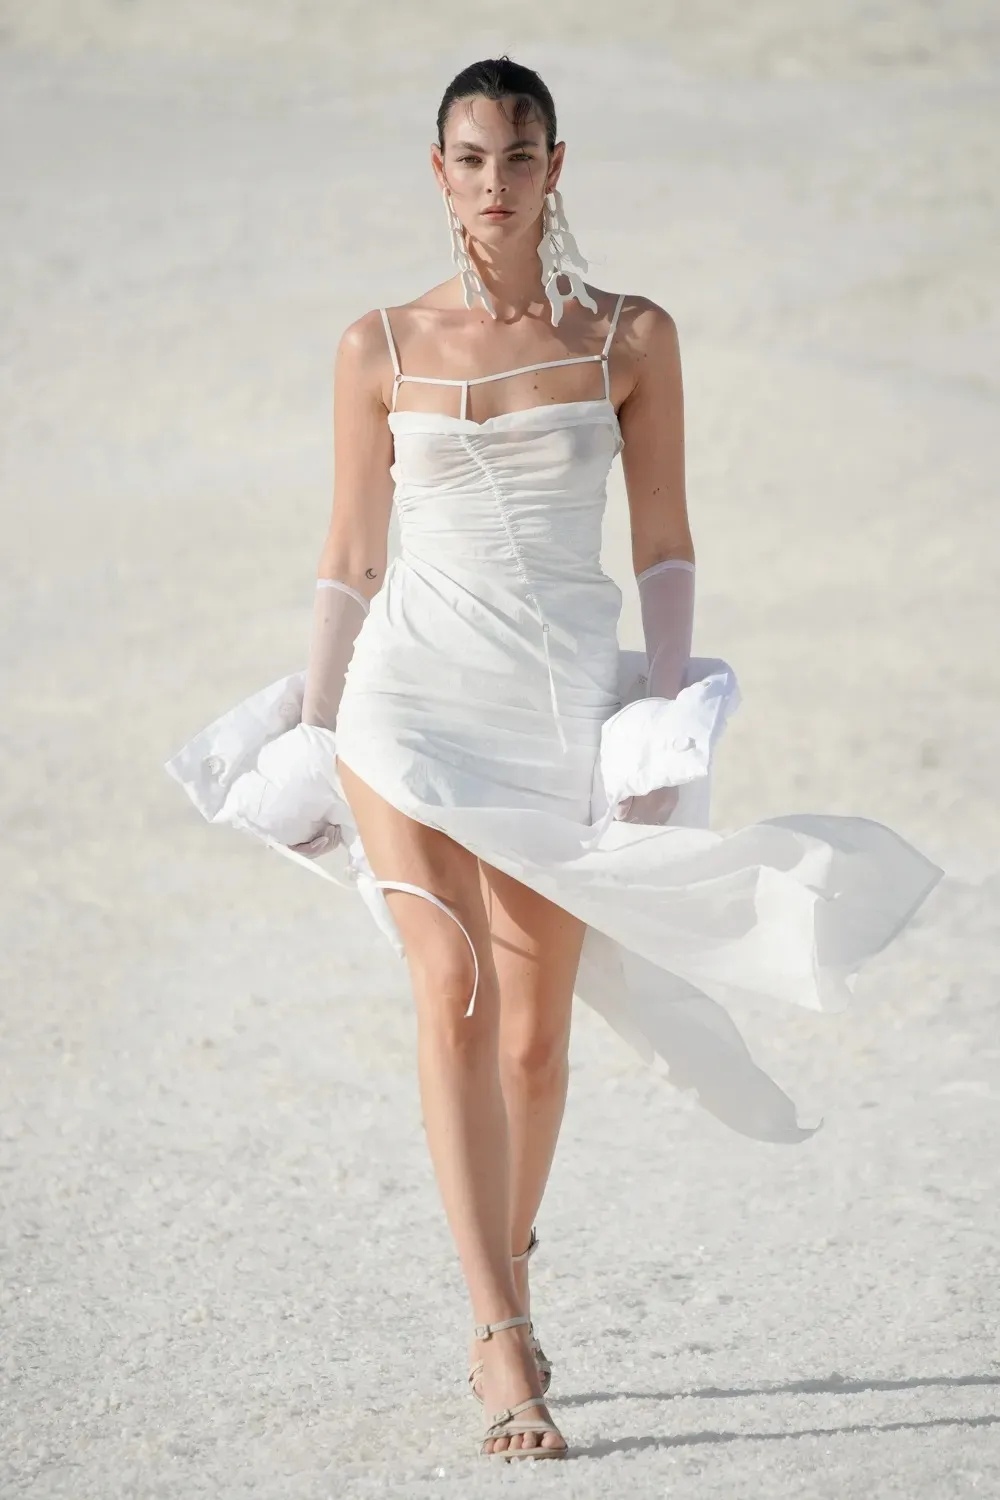 Váy cưới không dành cho cô dâu bánh bèo, bởi nó quá hoang dại và cá tính - ảnh 4